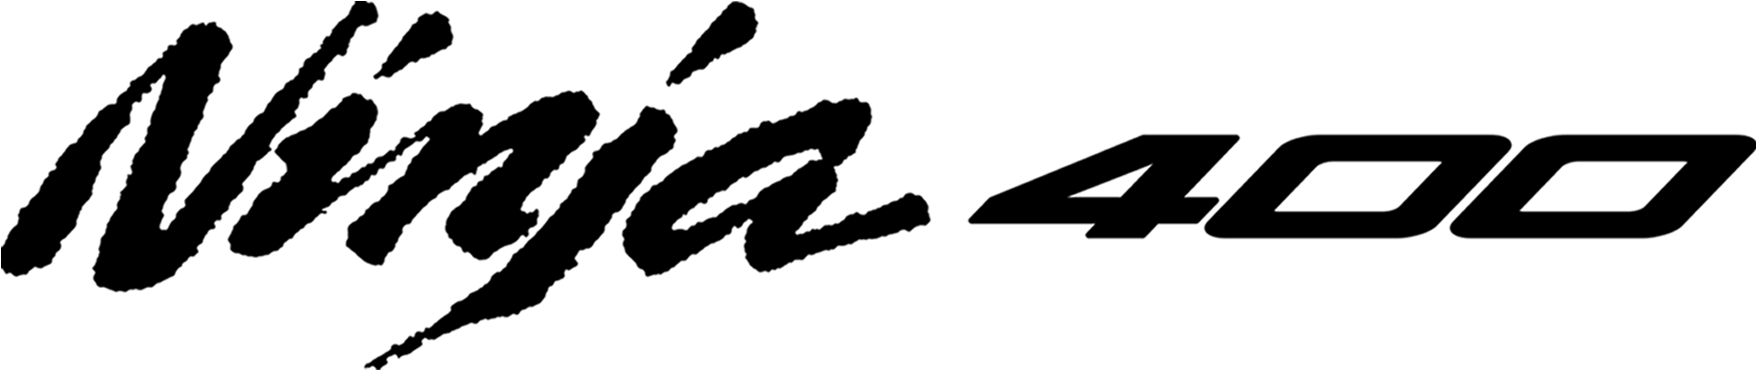 Ninja Logo Png - Kawasaki Ninja Logo Vector Clipart (1932x568), Png Download